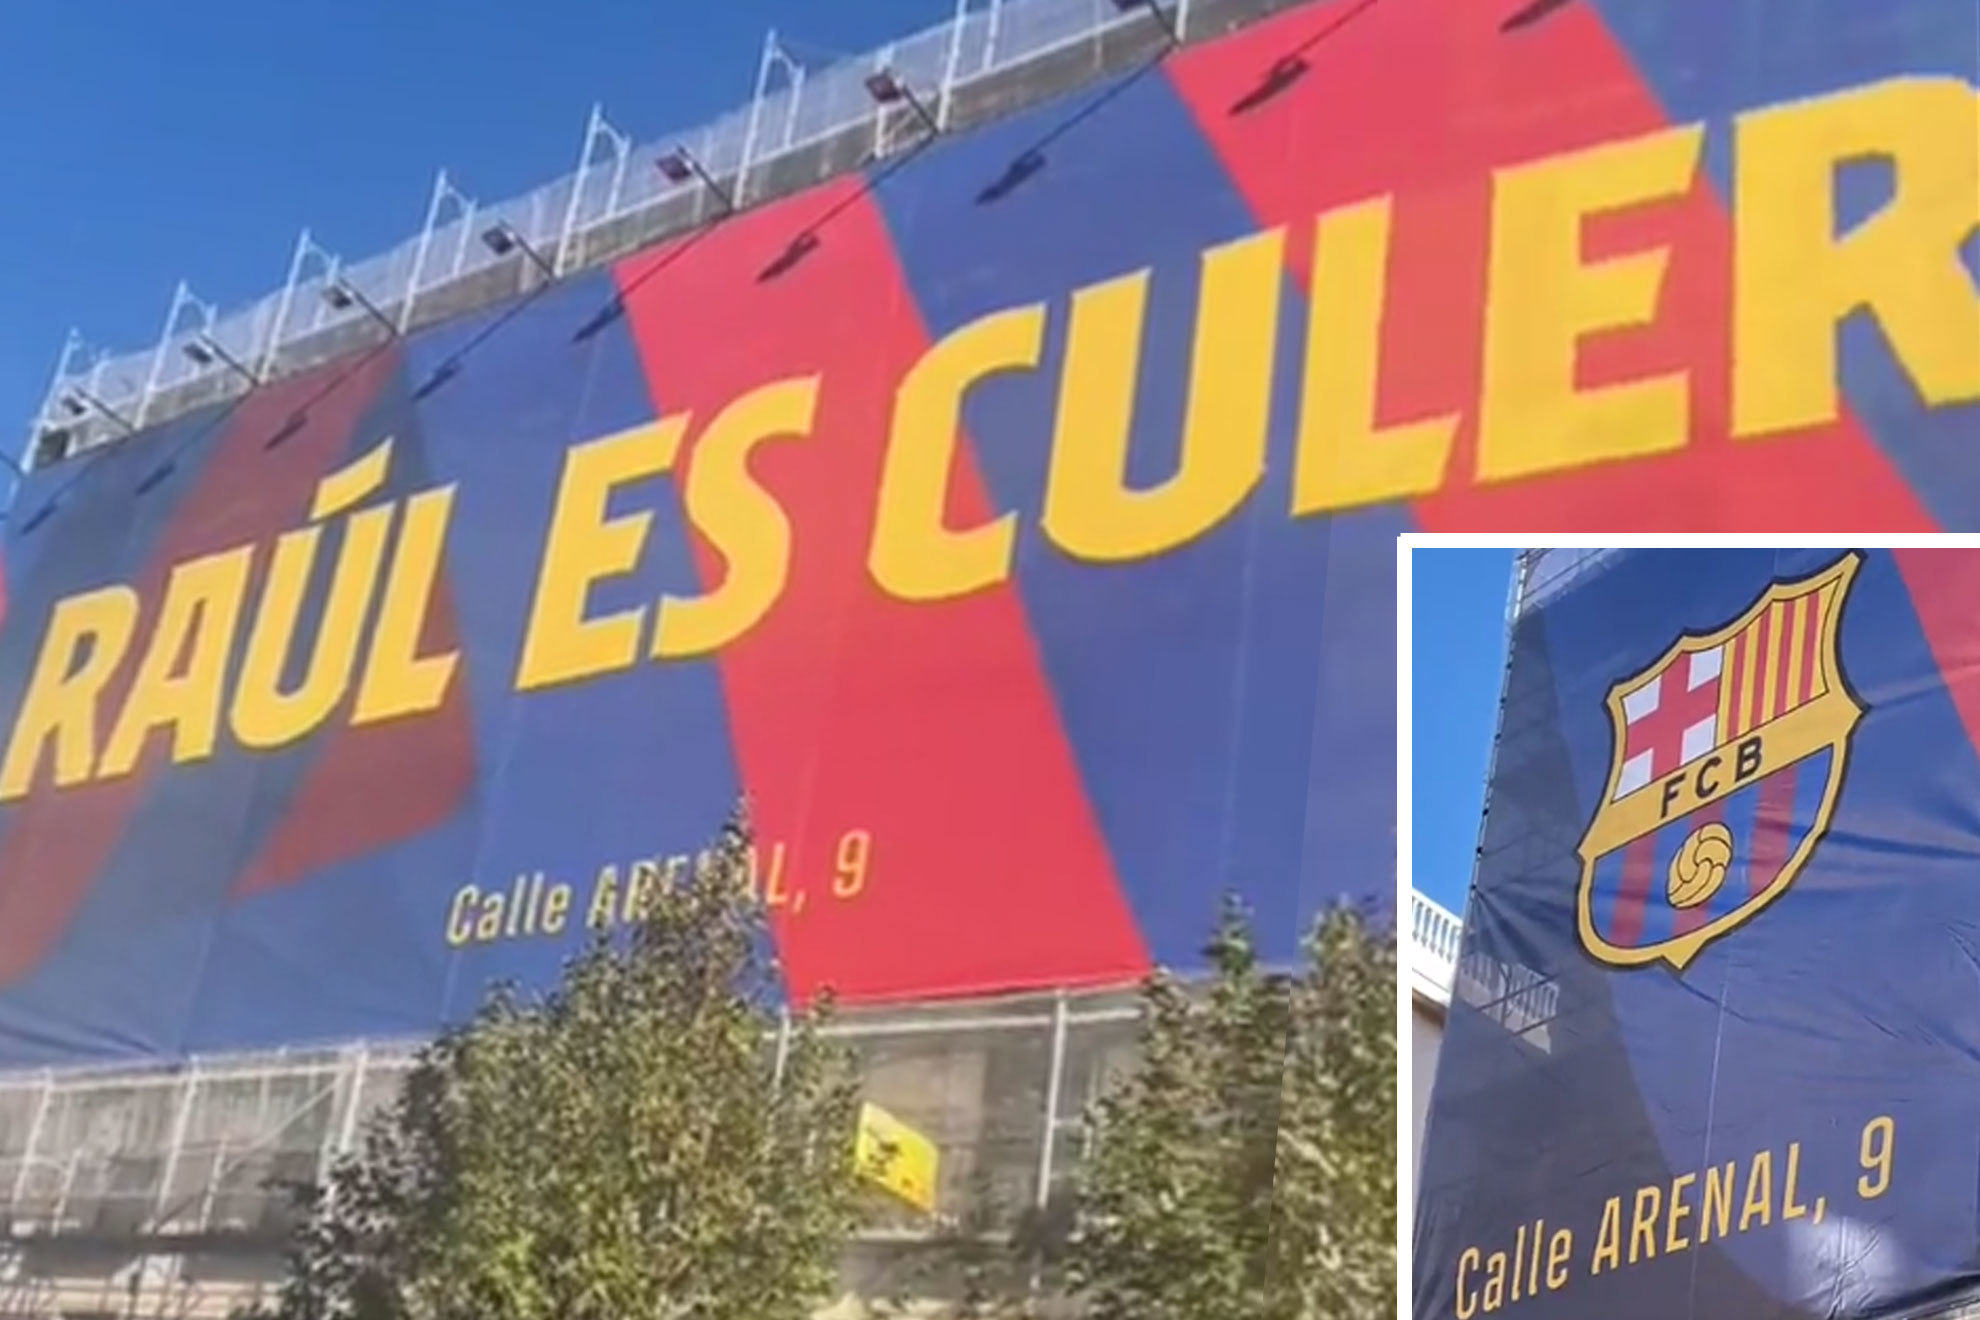 Laporta vuelve a 'liarla' con un enorme cartel publicitario en Madrid: "Raúl, Iker y Guti son culers"